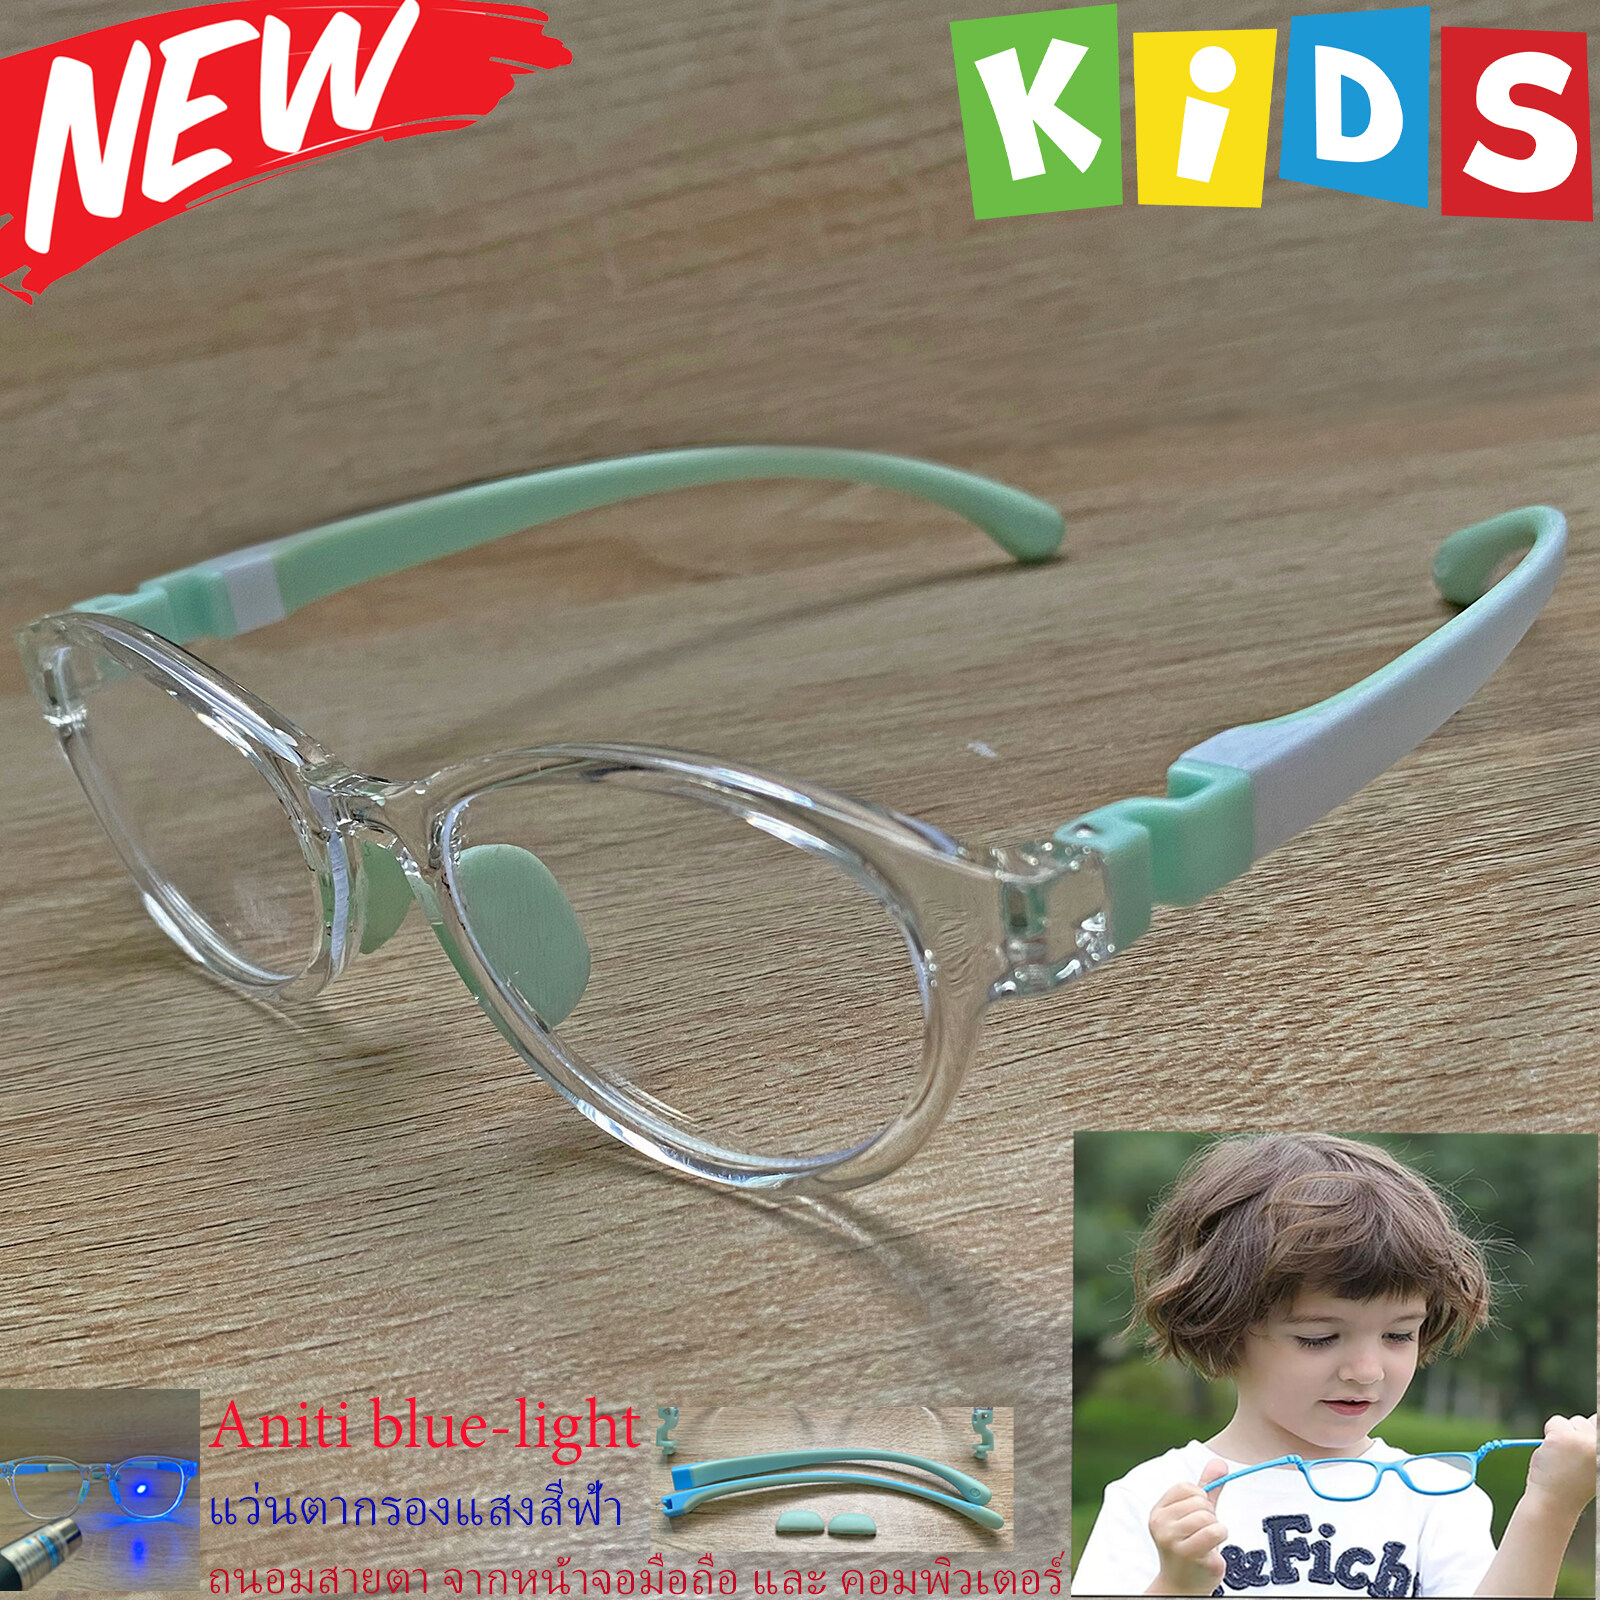 แว่นตาเด็กกรองแสง สีฟ้า blue block กรอบแว่นเด็ก บลูบล็อค รุ่น 05 ขาข้อต่อยืดหยุ่น ถอดขาเปลี่ยนได้ วัสดุTR90 เหมาะสำหรับเลนส์สายตา